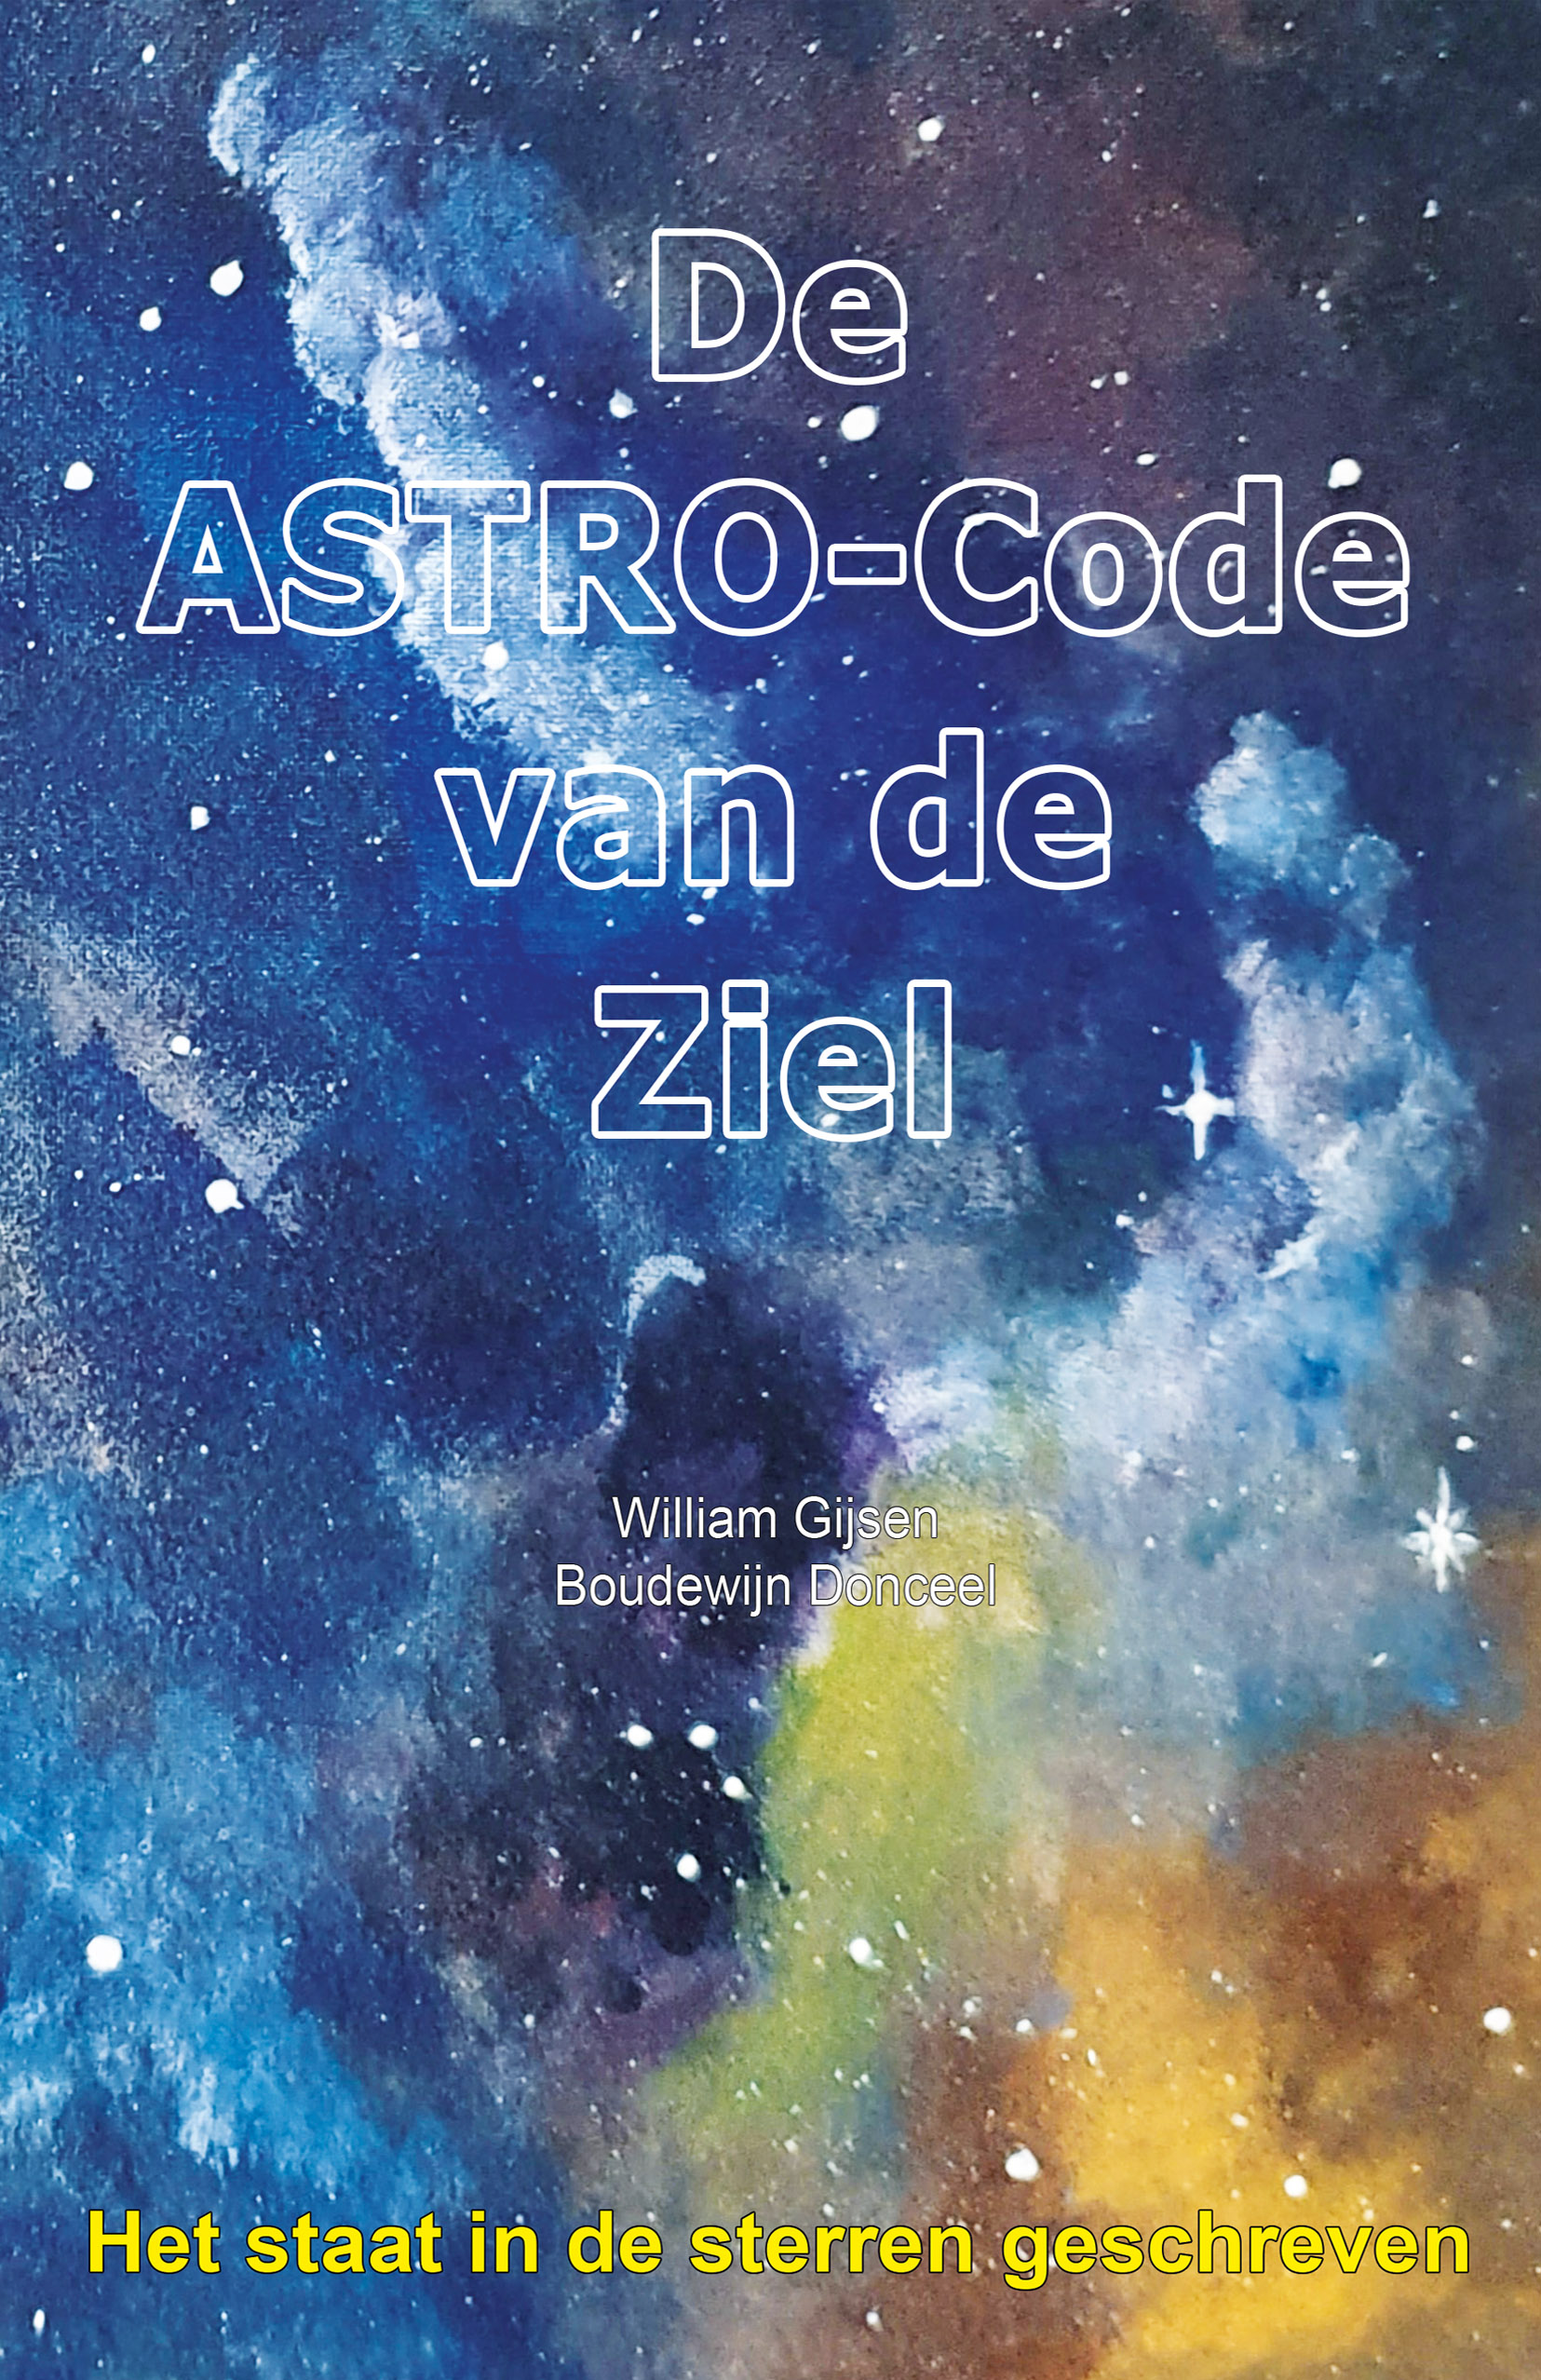 De ASTRO-Code van de Ziel - Het staat in de sterren geschreven main image